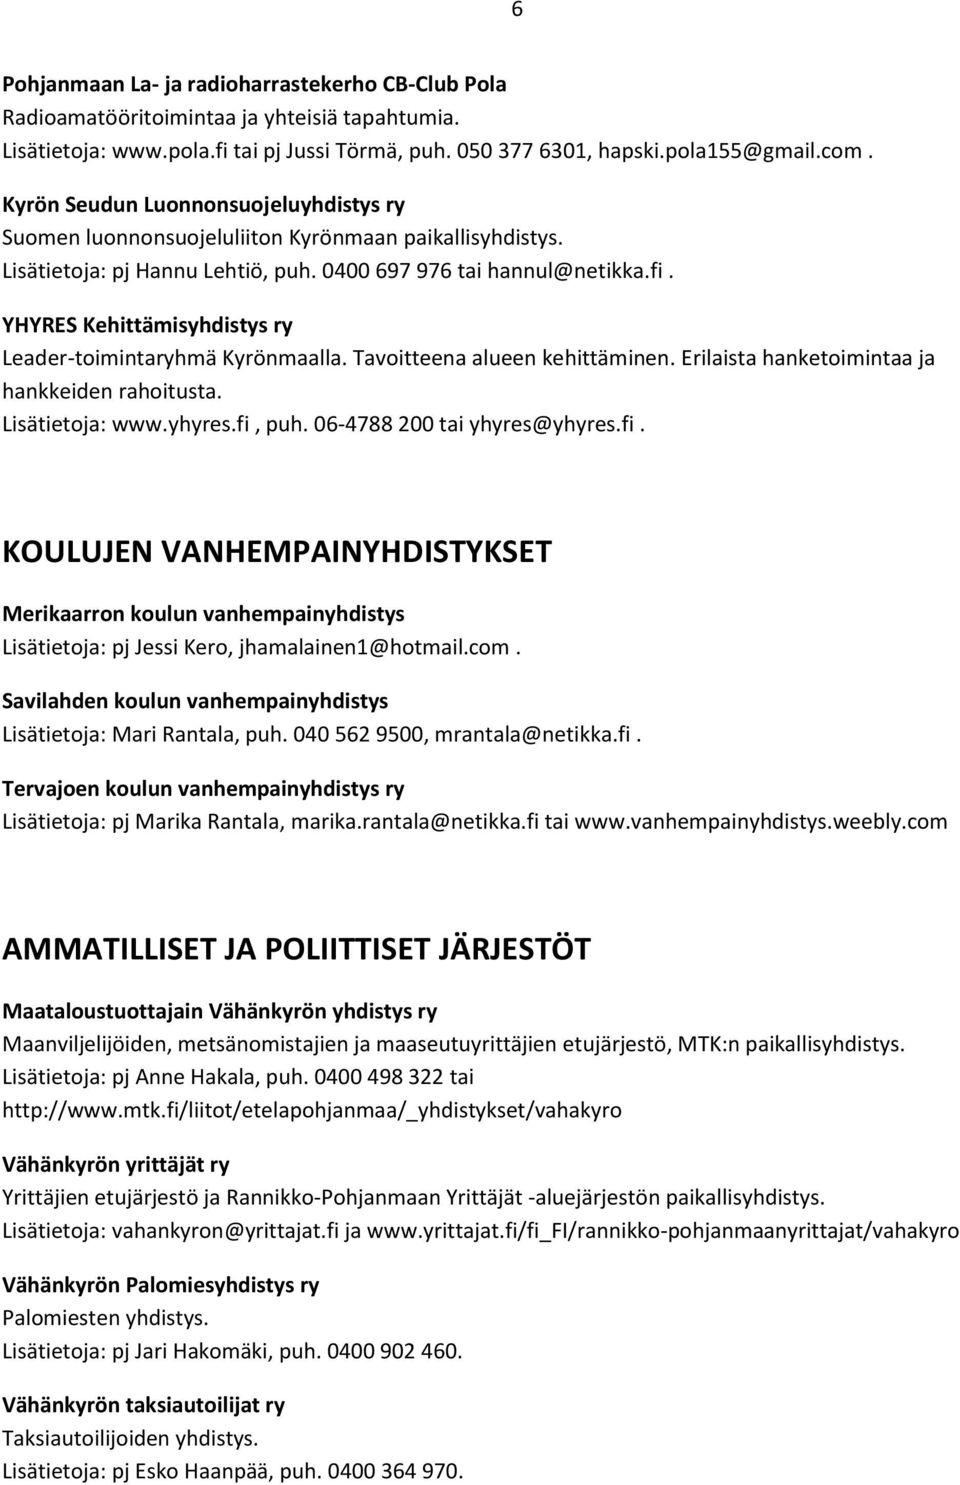 YHYRES Kehittämisyhdistys ry Leader-toimintaryhmä Kyrönmaalla. Tavoitteena alueen kehittäminen. Erilaista hanketoimintaa ja hankkeiden rahoitusta. Lisätietoja: www.yhyres.fi, puh.